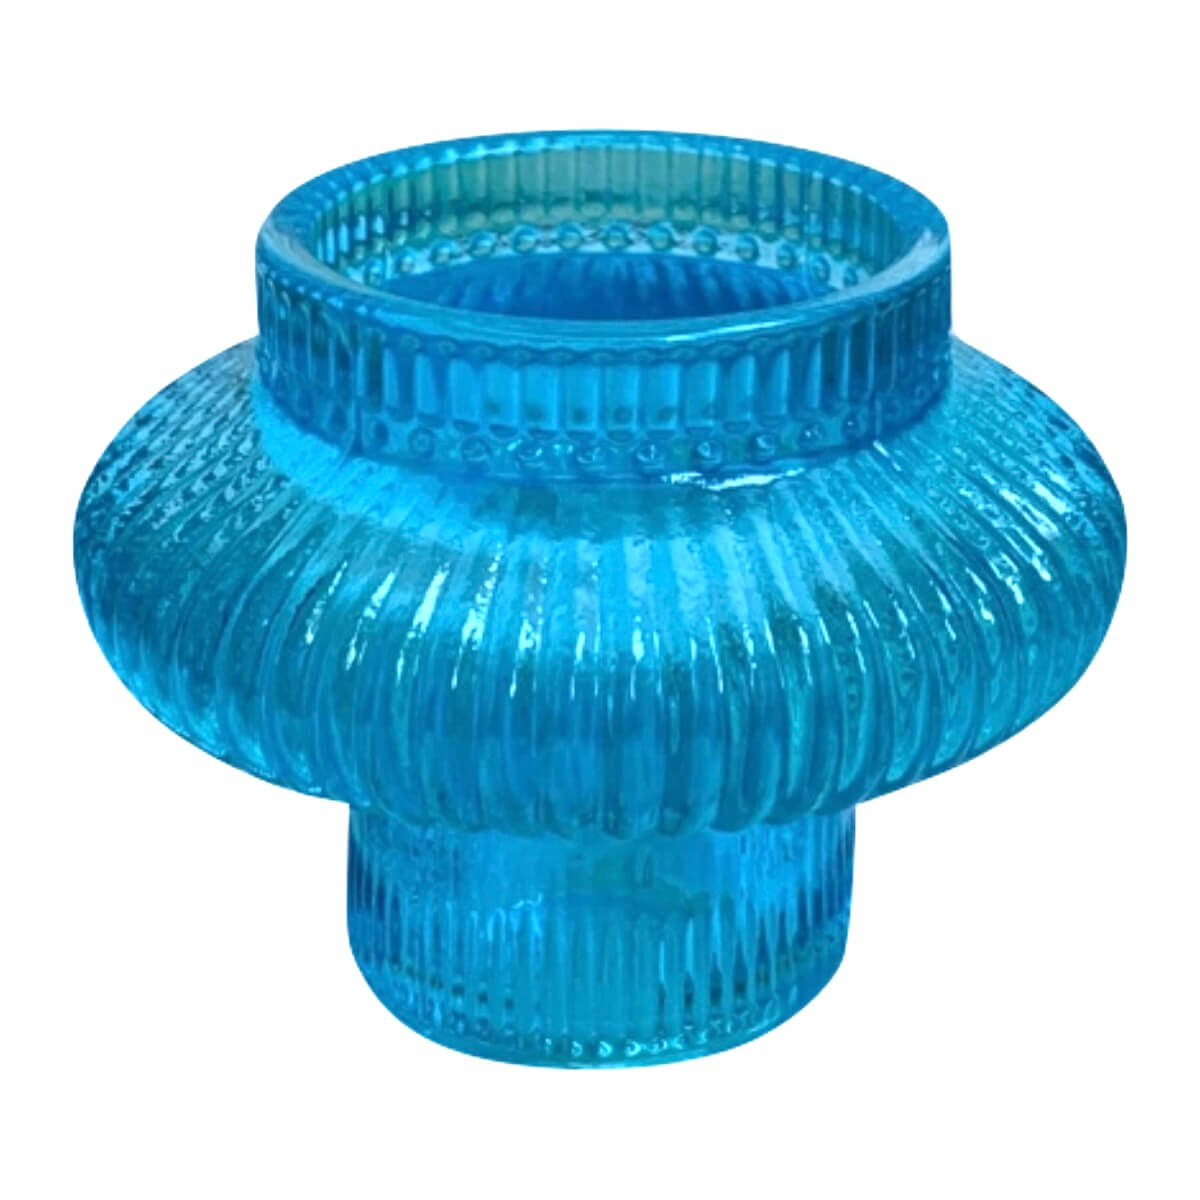 Glazen kandelaar / waxine houder in aqua blauw